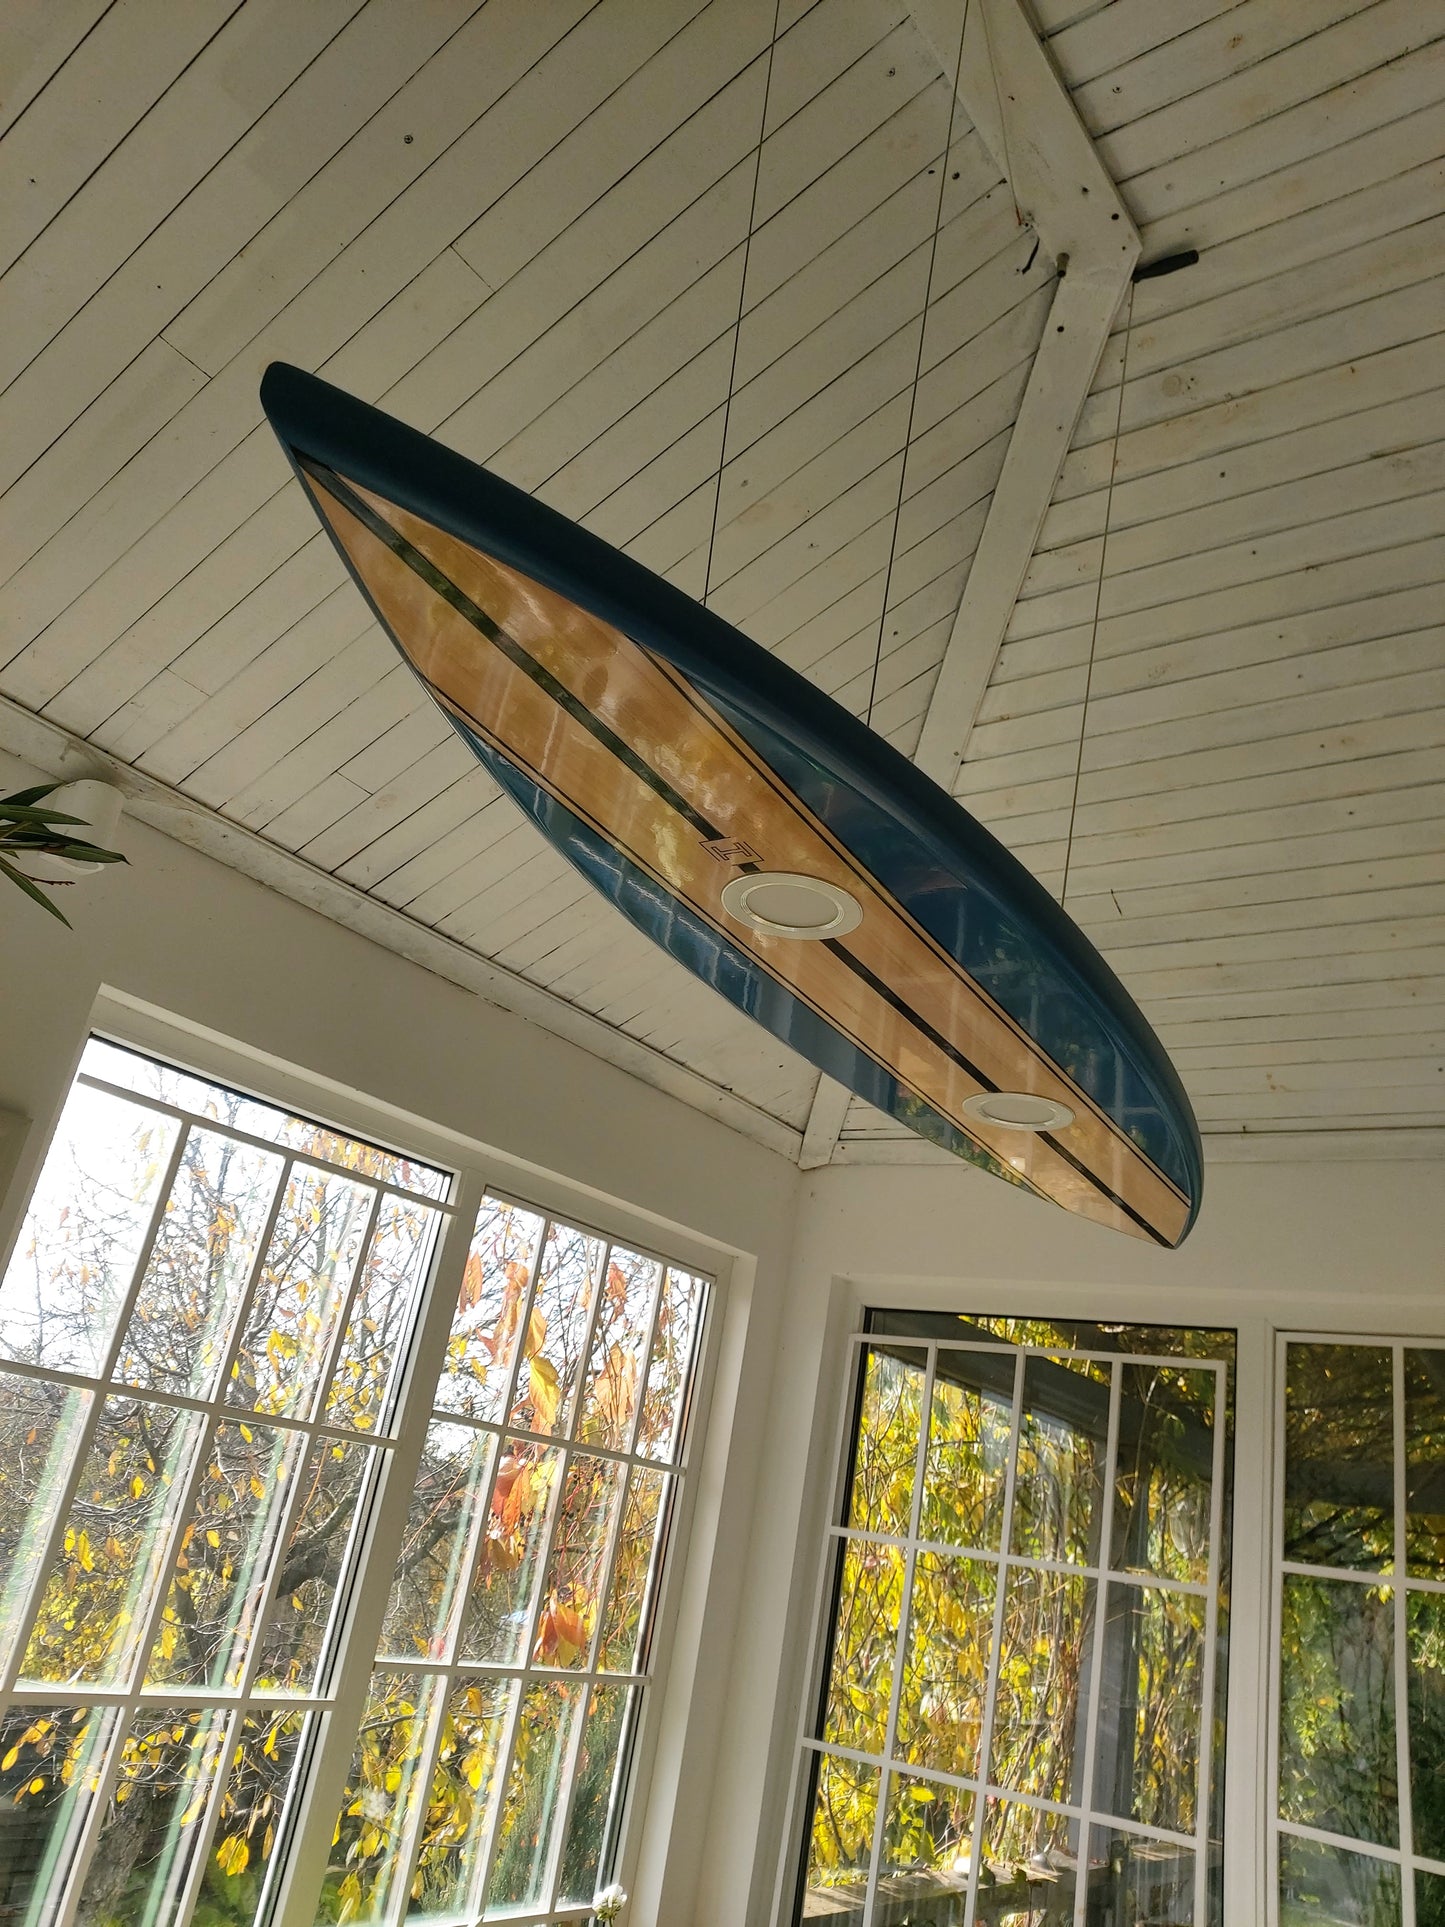 40 inch Surfboard Shaped Ceiling Chandelier - Pool Billiard Table Light